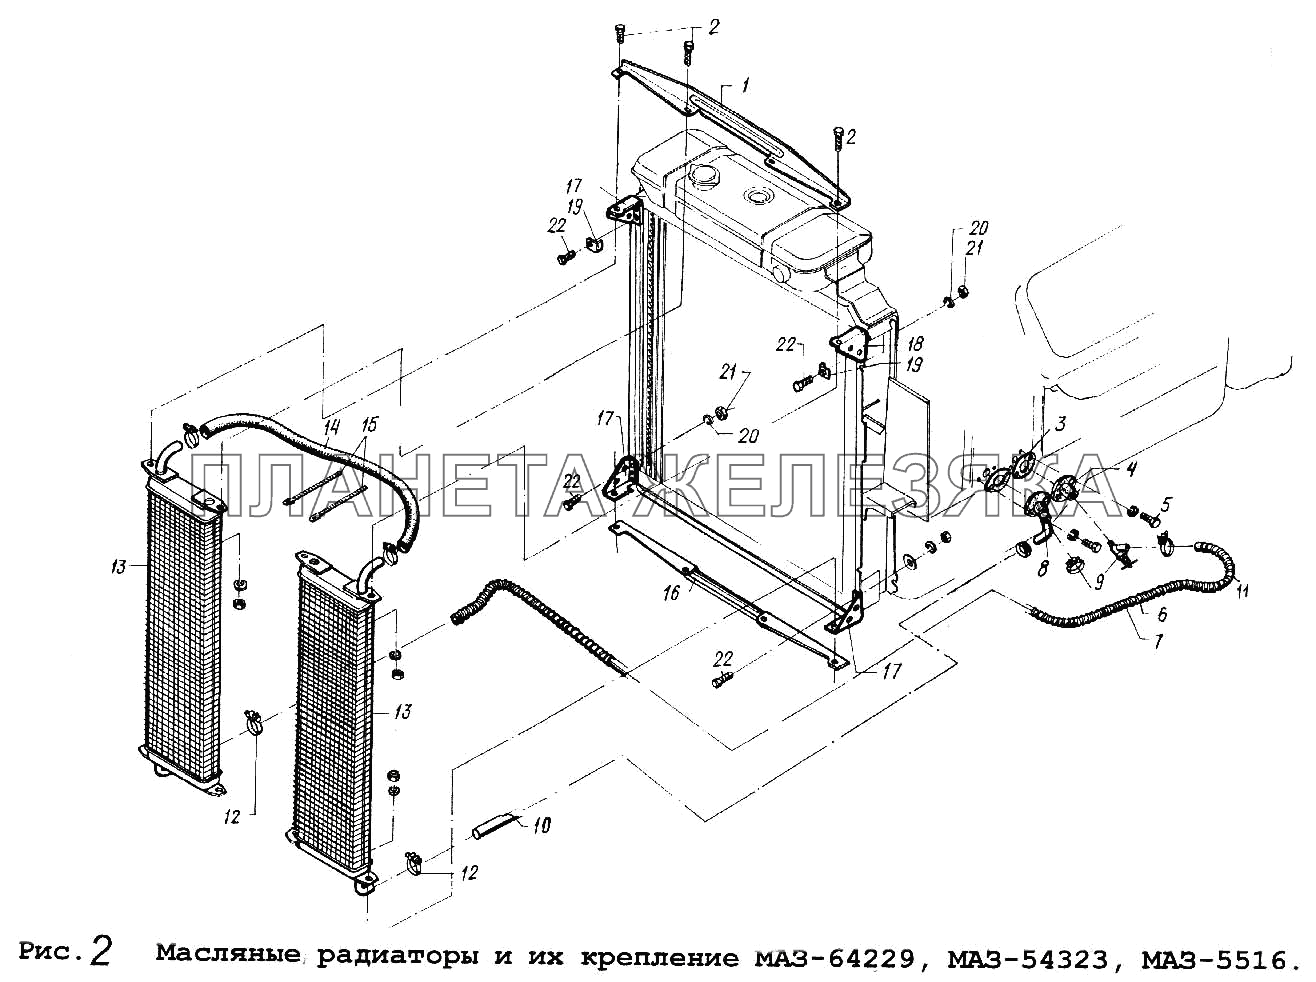 Масляные радиаторы и их крепление МАЗ-64229, МАЗ-54323,МАЗ-5516 МАЗ-64229